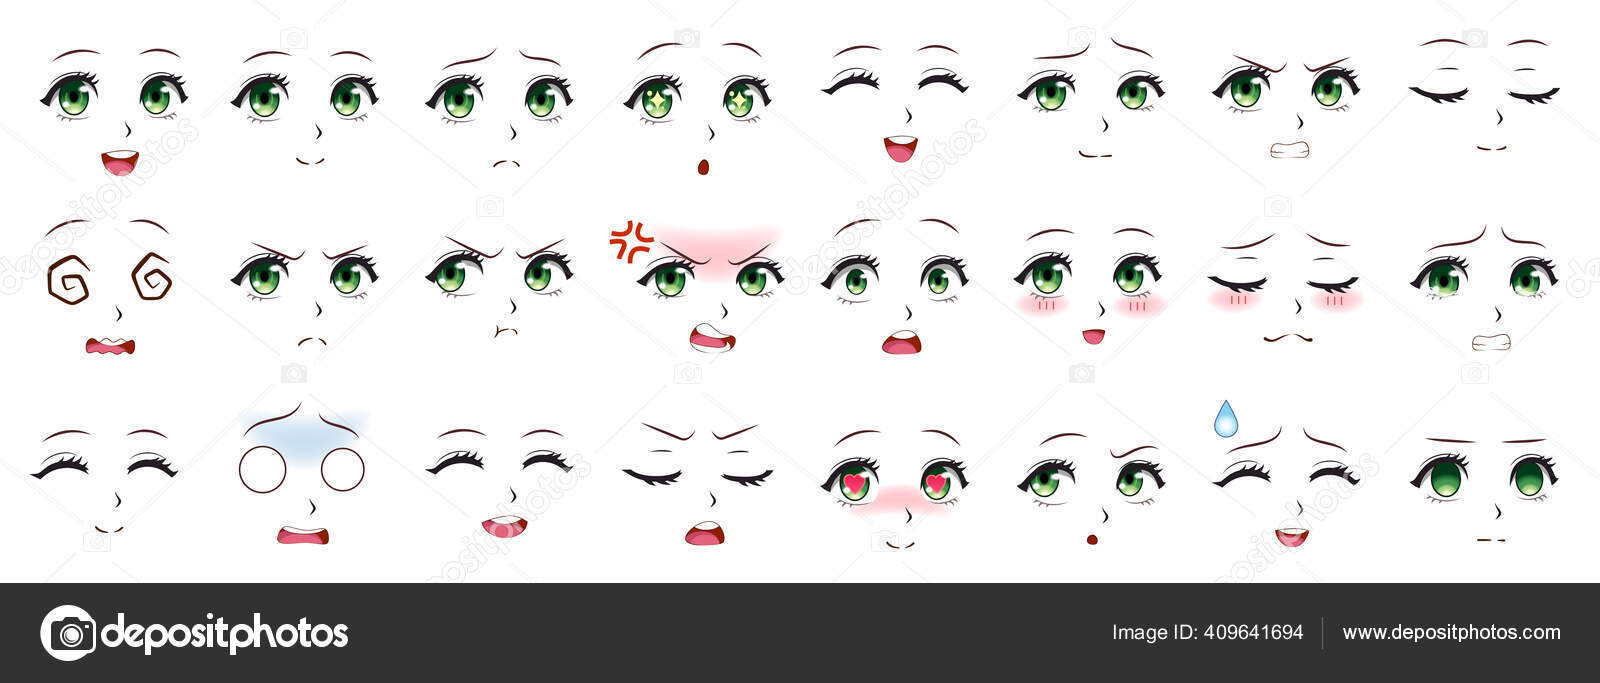 Olhos, sobrancelhas e expressões da boca dos personagens de anime dos  desenhos animados. personagens femininas de mangá enfrenta conjunto de  ilustração vetorial. personagens de expressões de anime manga girl, emoção  rosto de